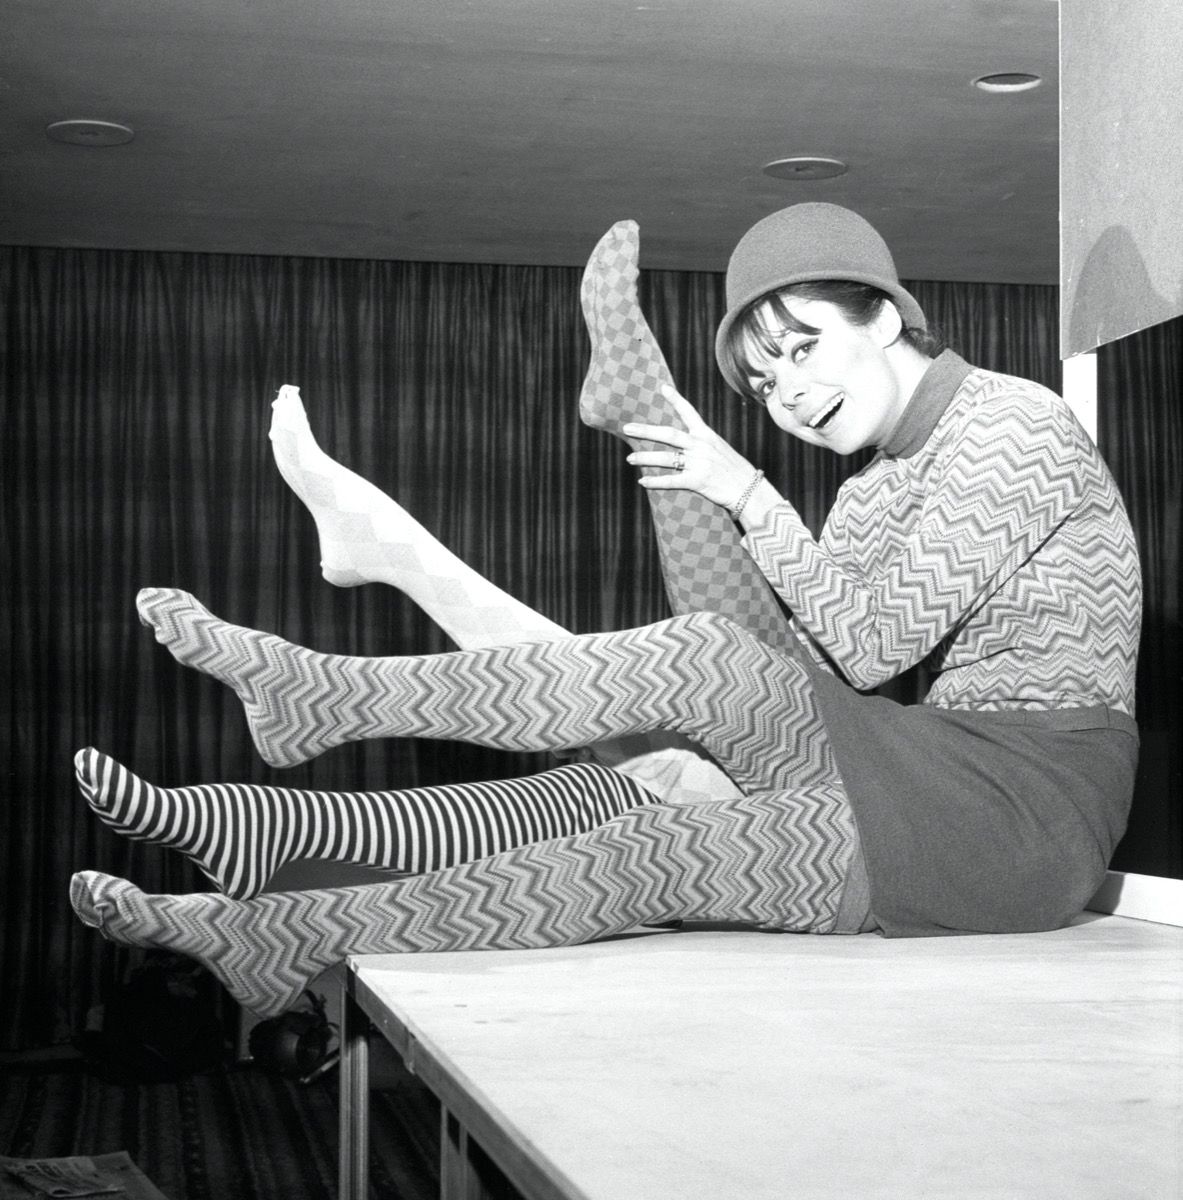 ภาพถ่ายขาวดำของผู้หญิงในปี 1960 สวมถุงน่องที่มีลวดลาย